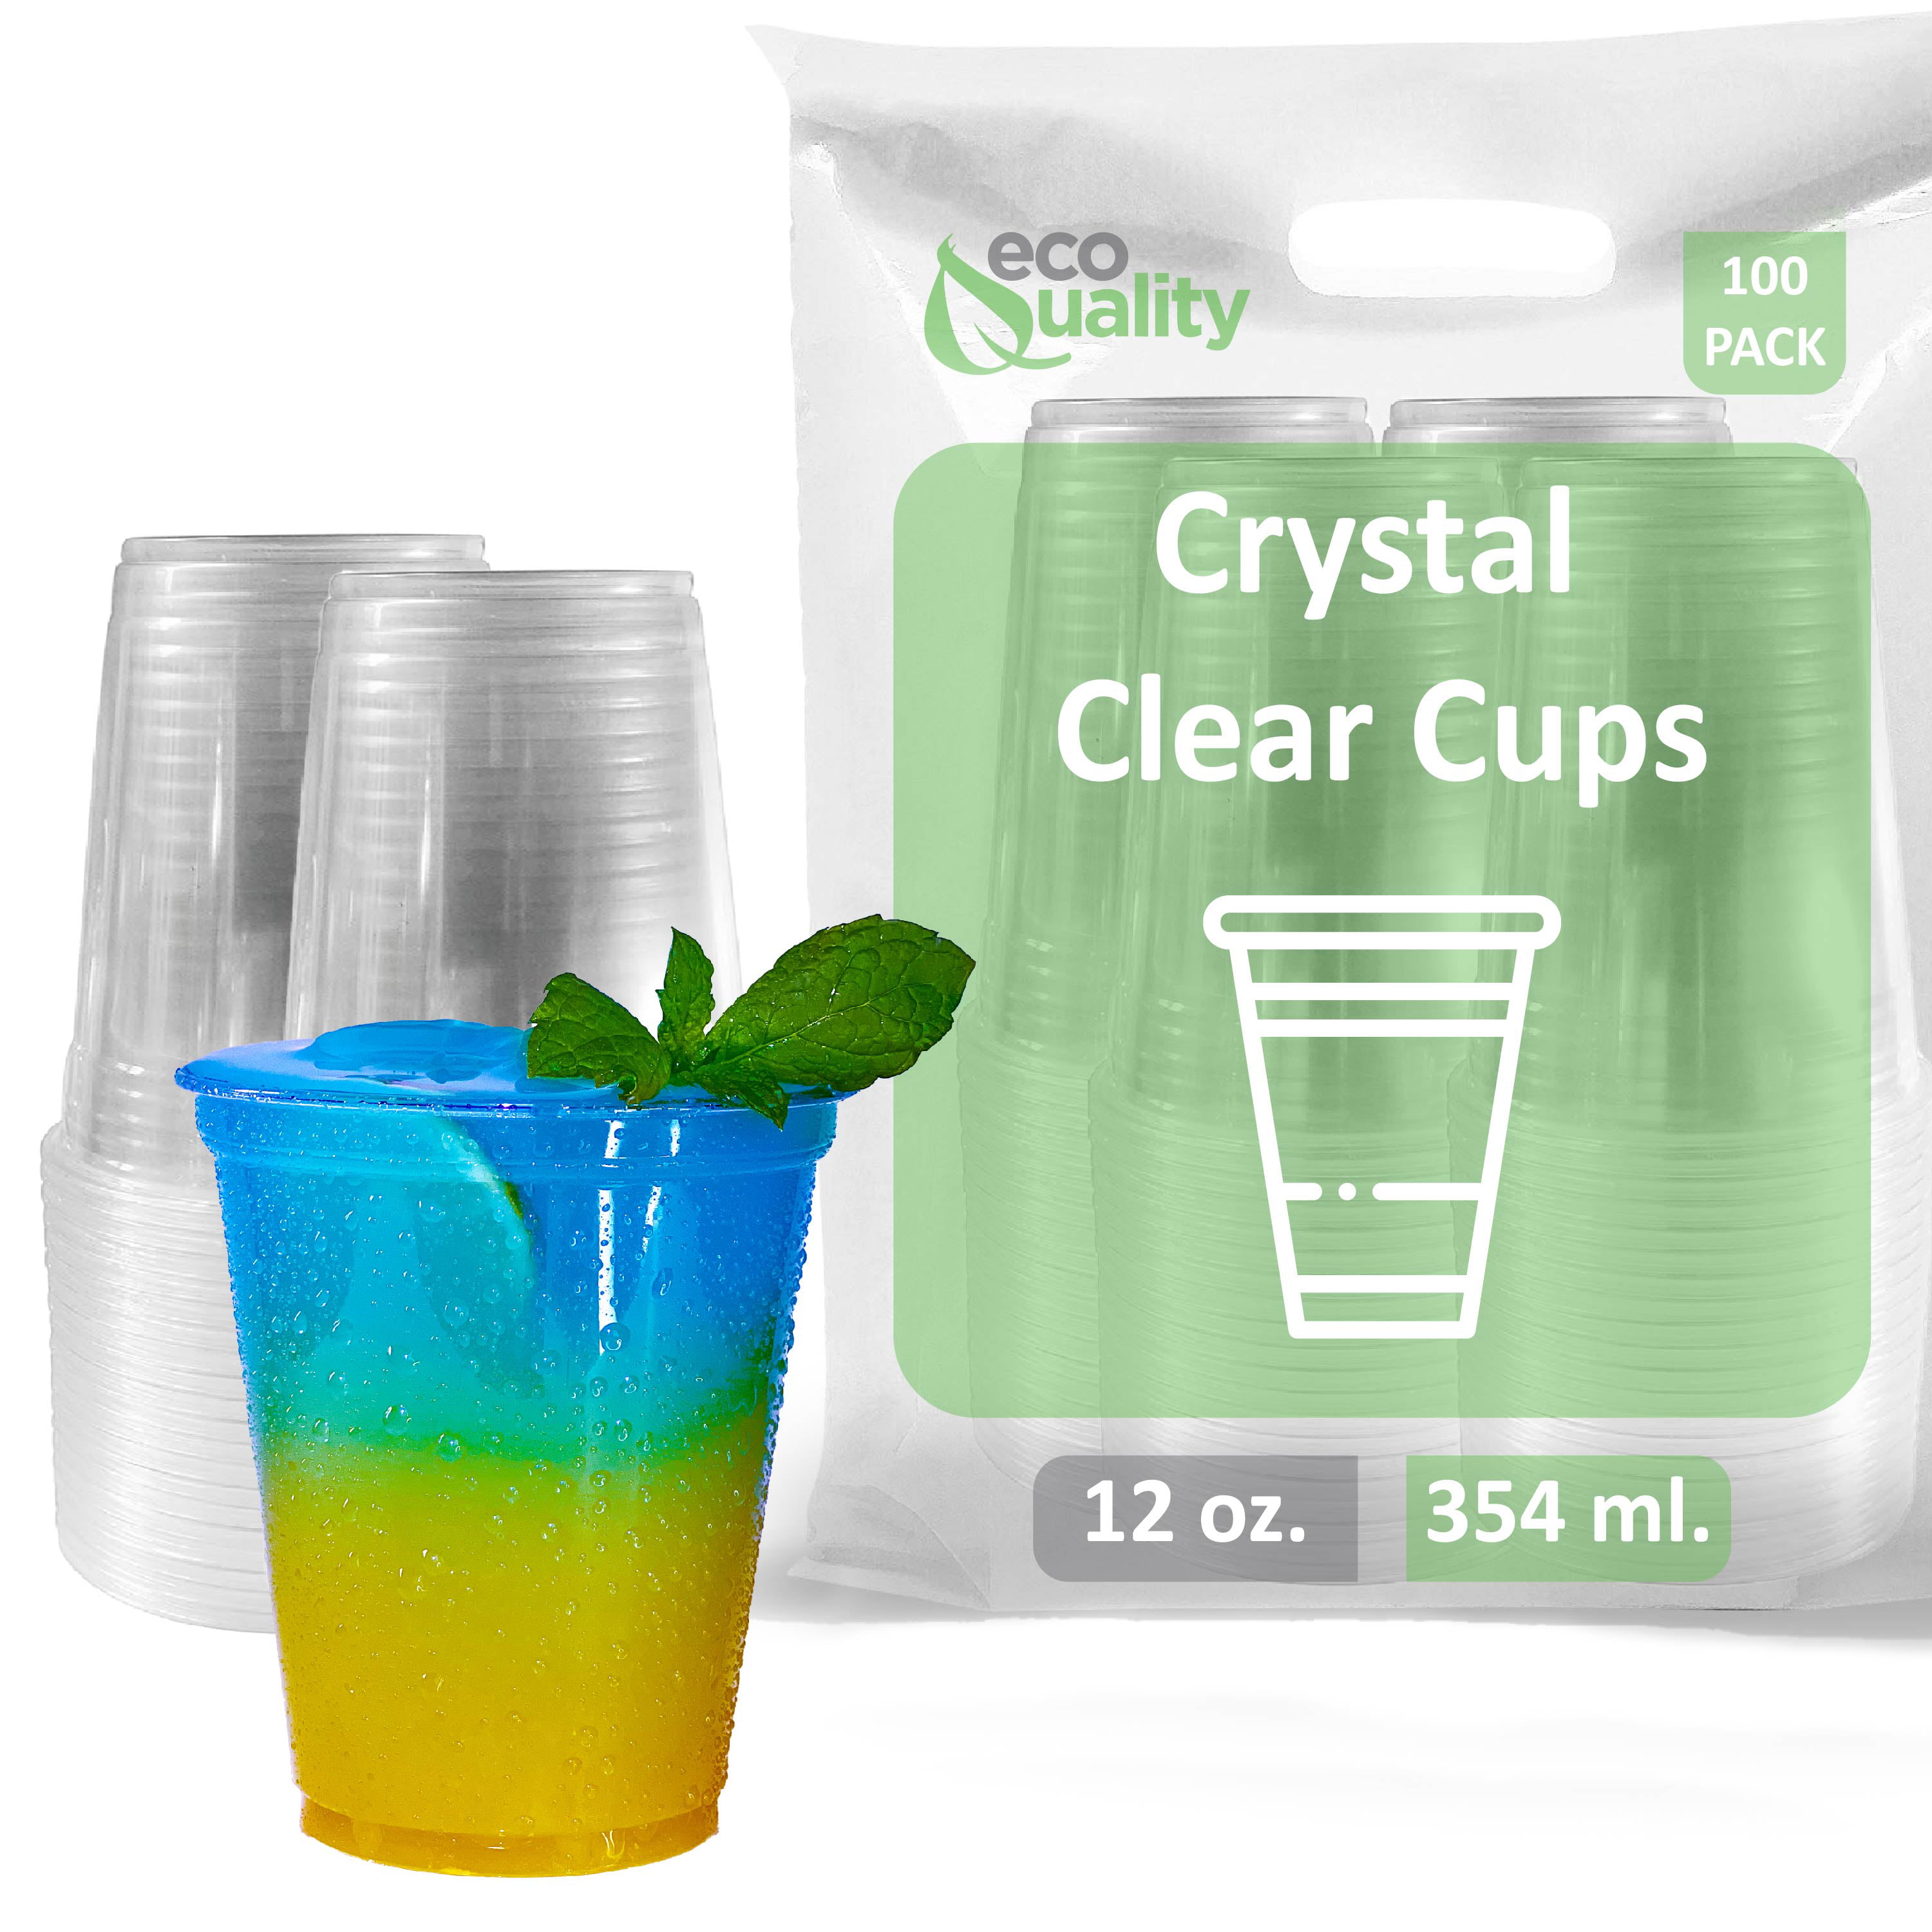 Plastic Parfait Cup 500/cs: Fresh Squeezed Lemonade